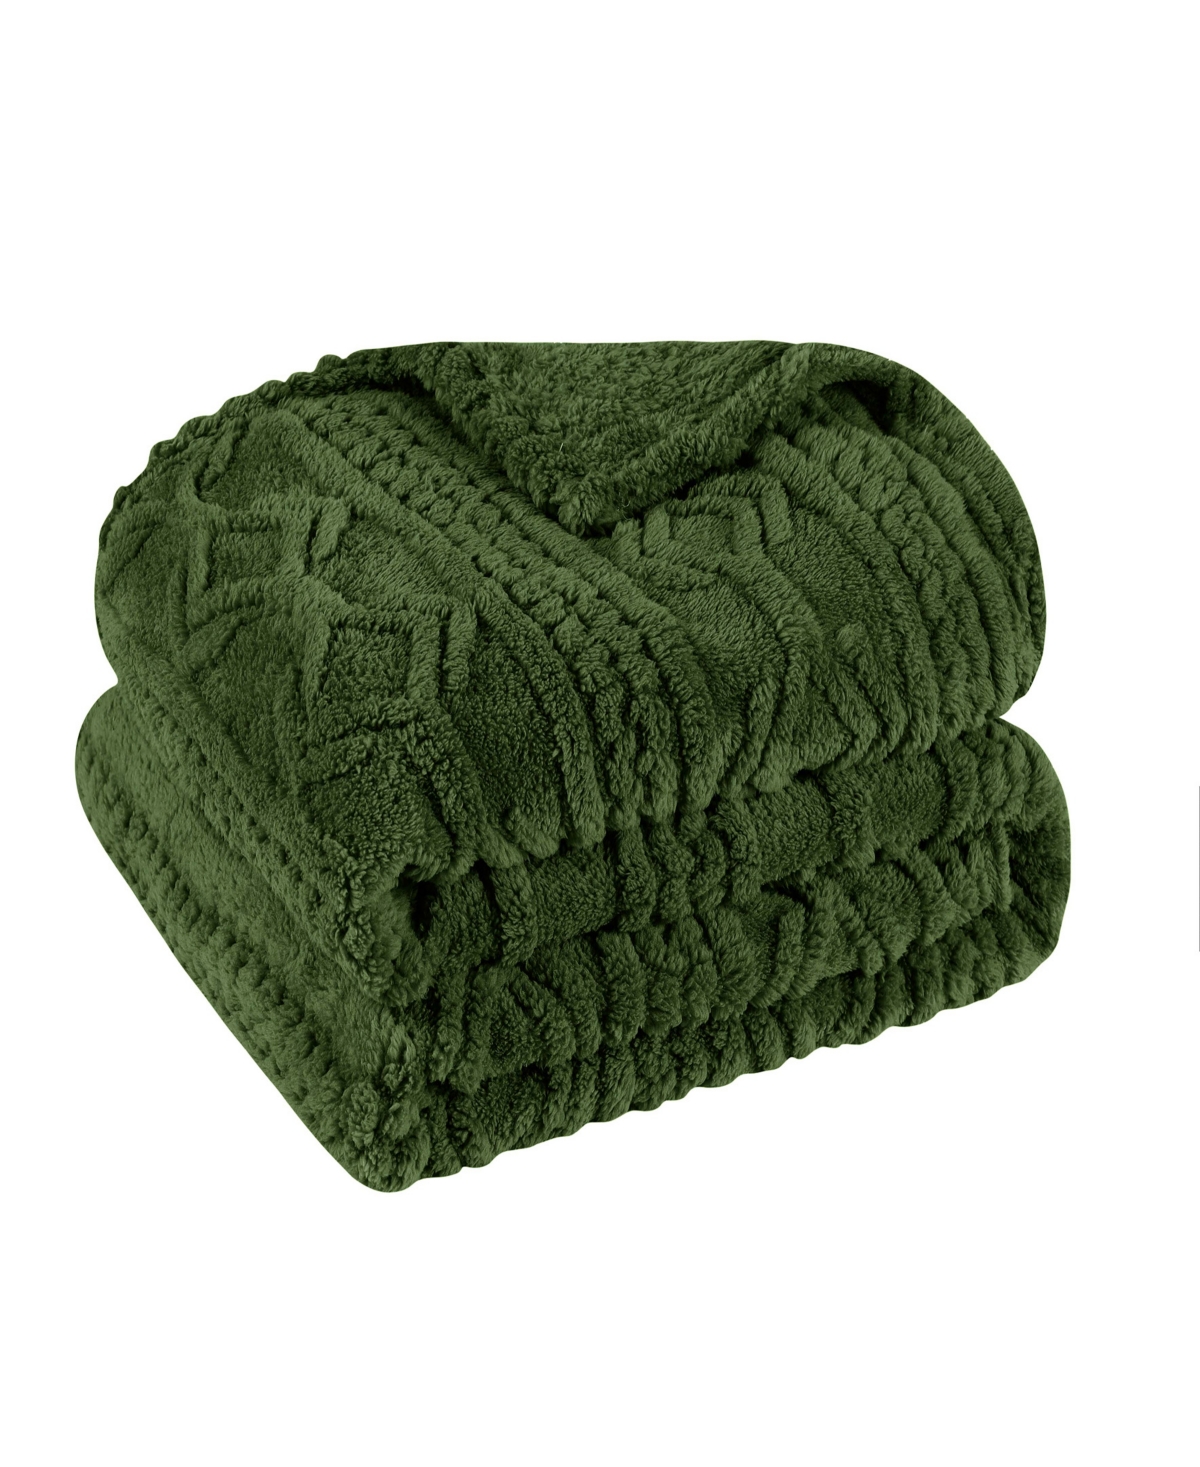 Superior Boho Knit Jacquard Fleece Plush Fluffy Blanket, King In Green